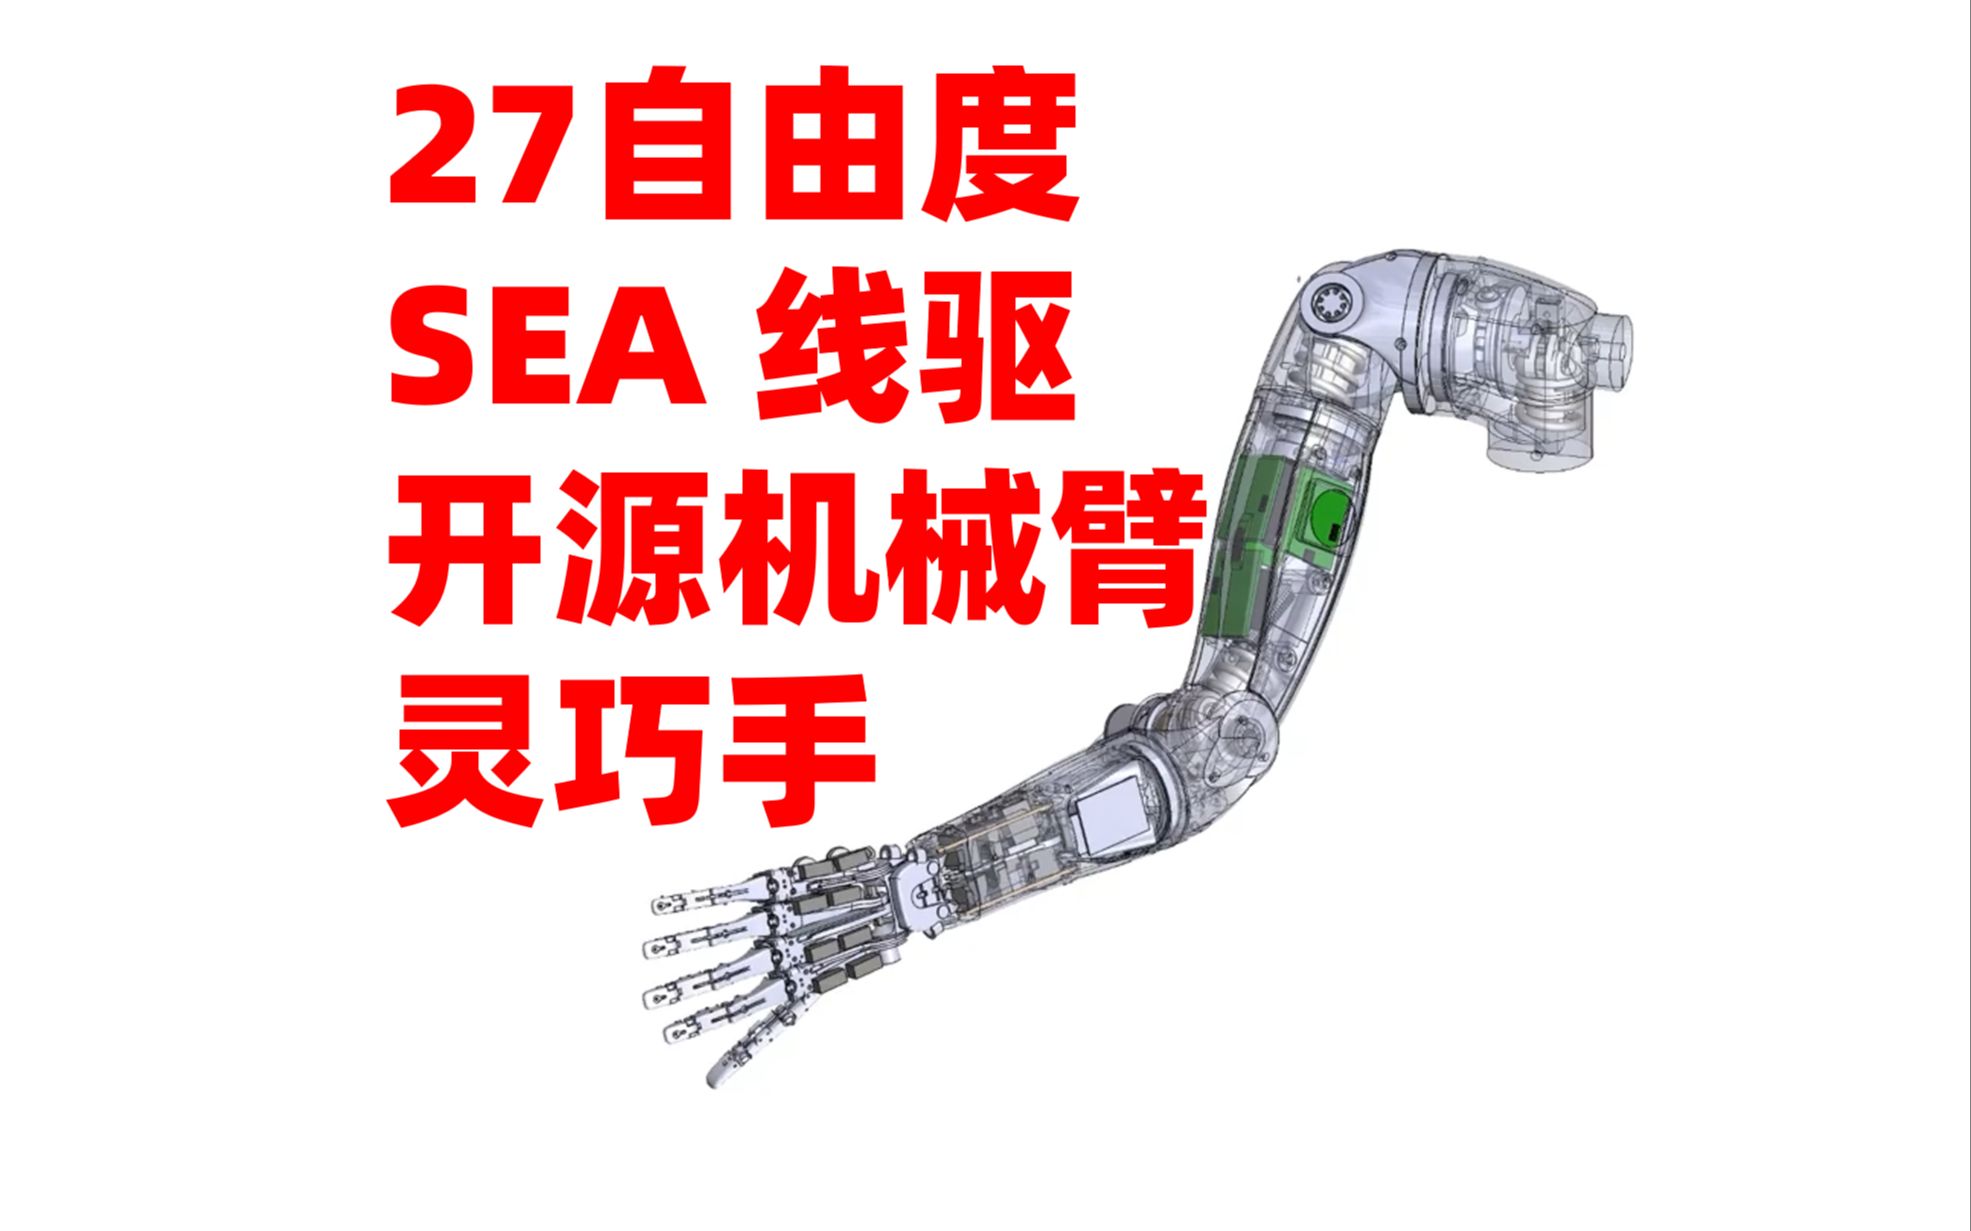 27自由度！SEA机械臂+线驱灵巧手——国外大神耗时一年完成的SEA关节柔性机械臂+线驱手